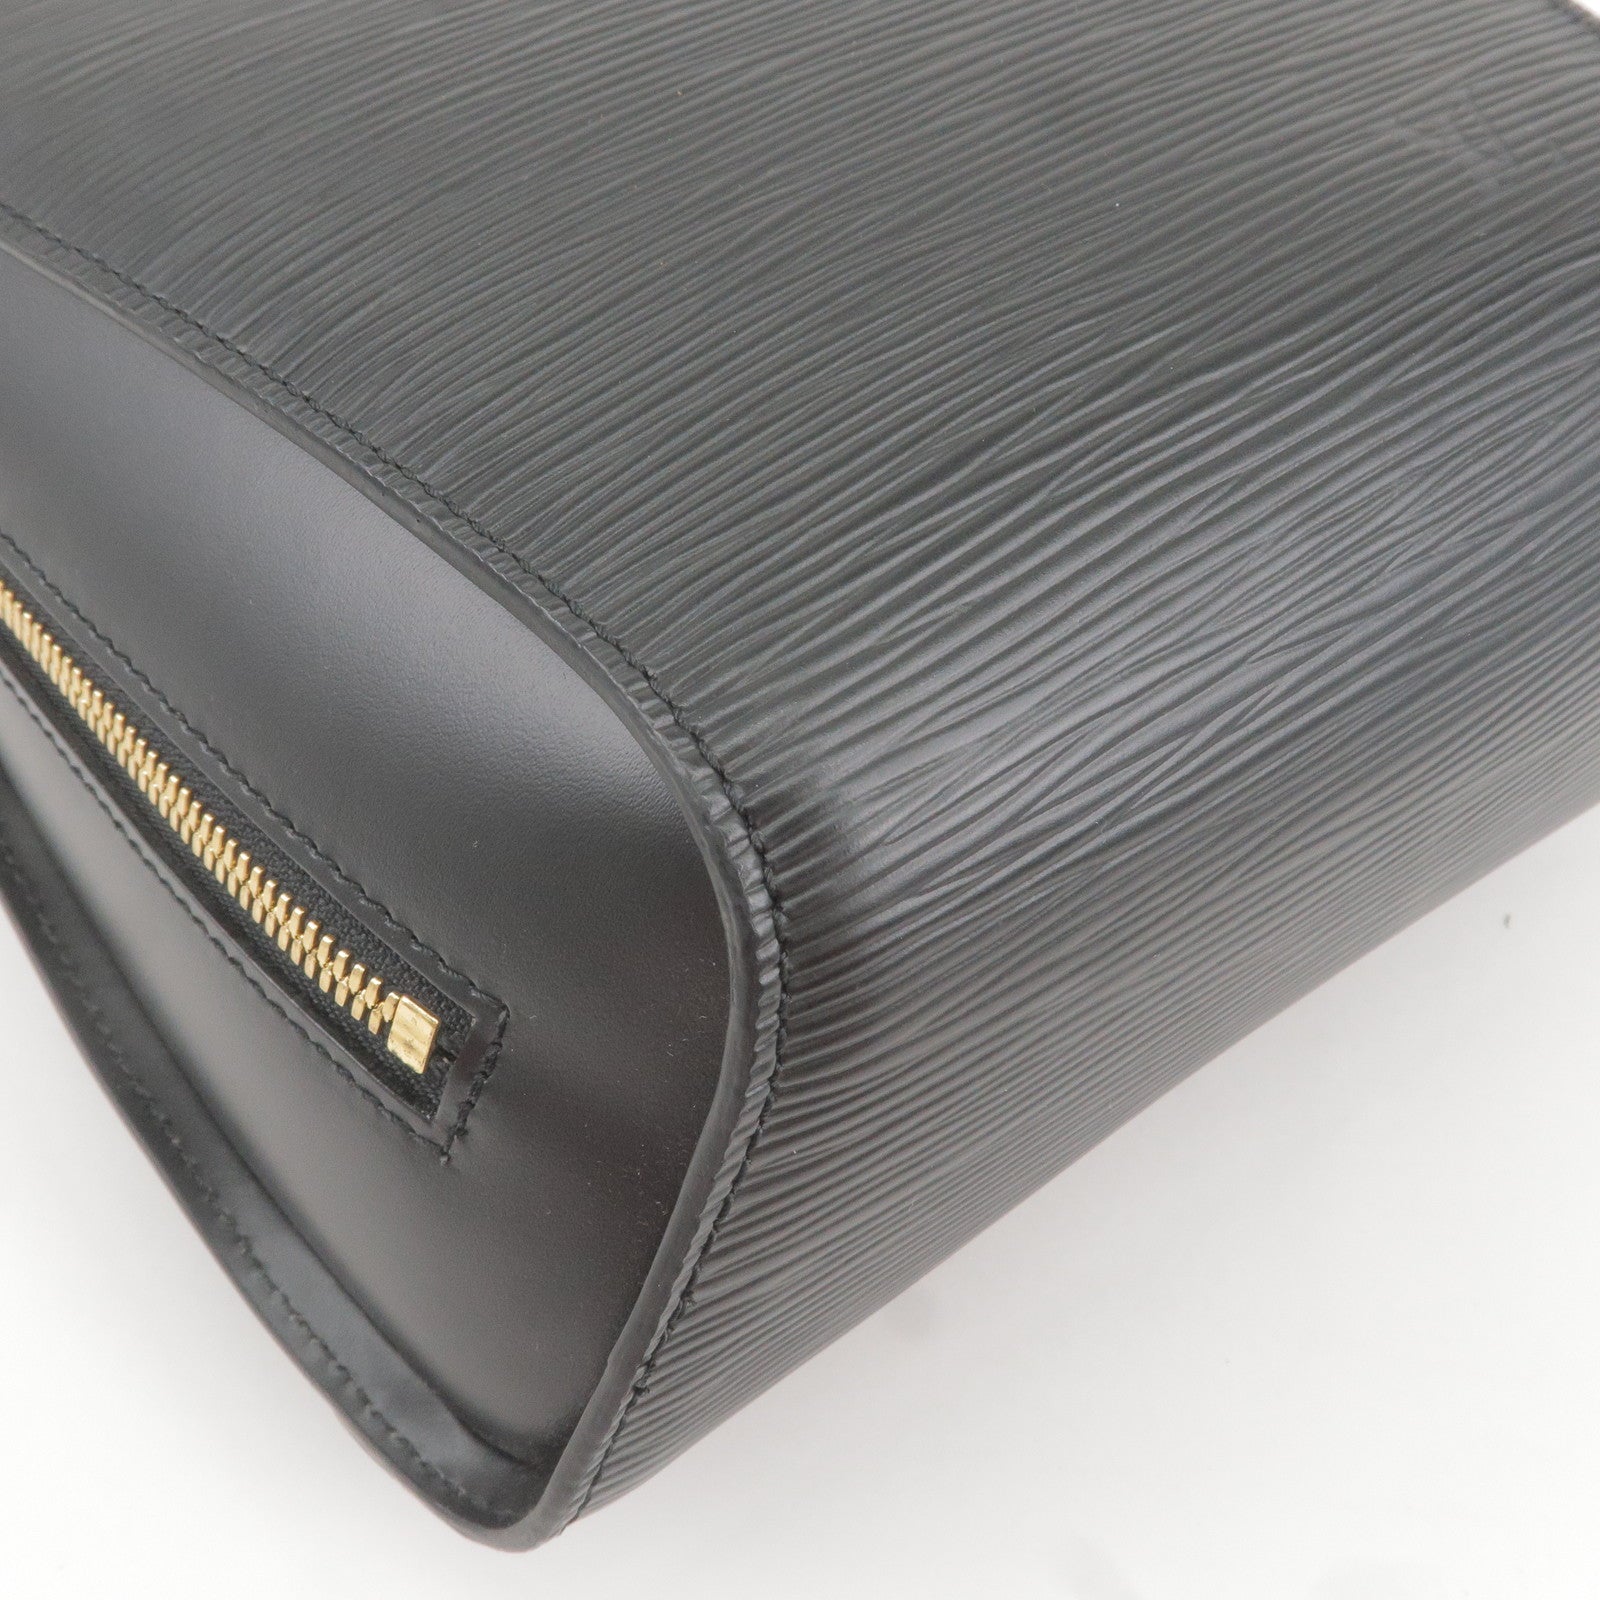 LOUIS VUITTON Epi Mabillon Rucksack Backpack Shoulder Bag Leather Noir  #12260737